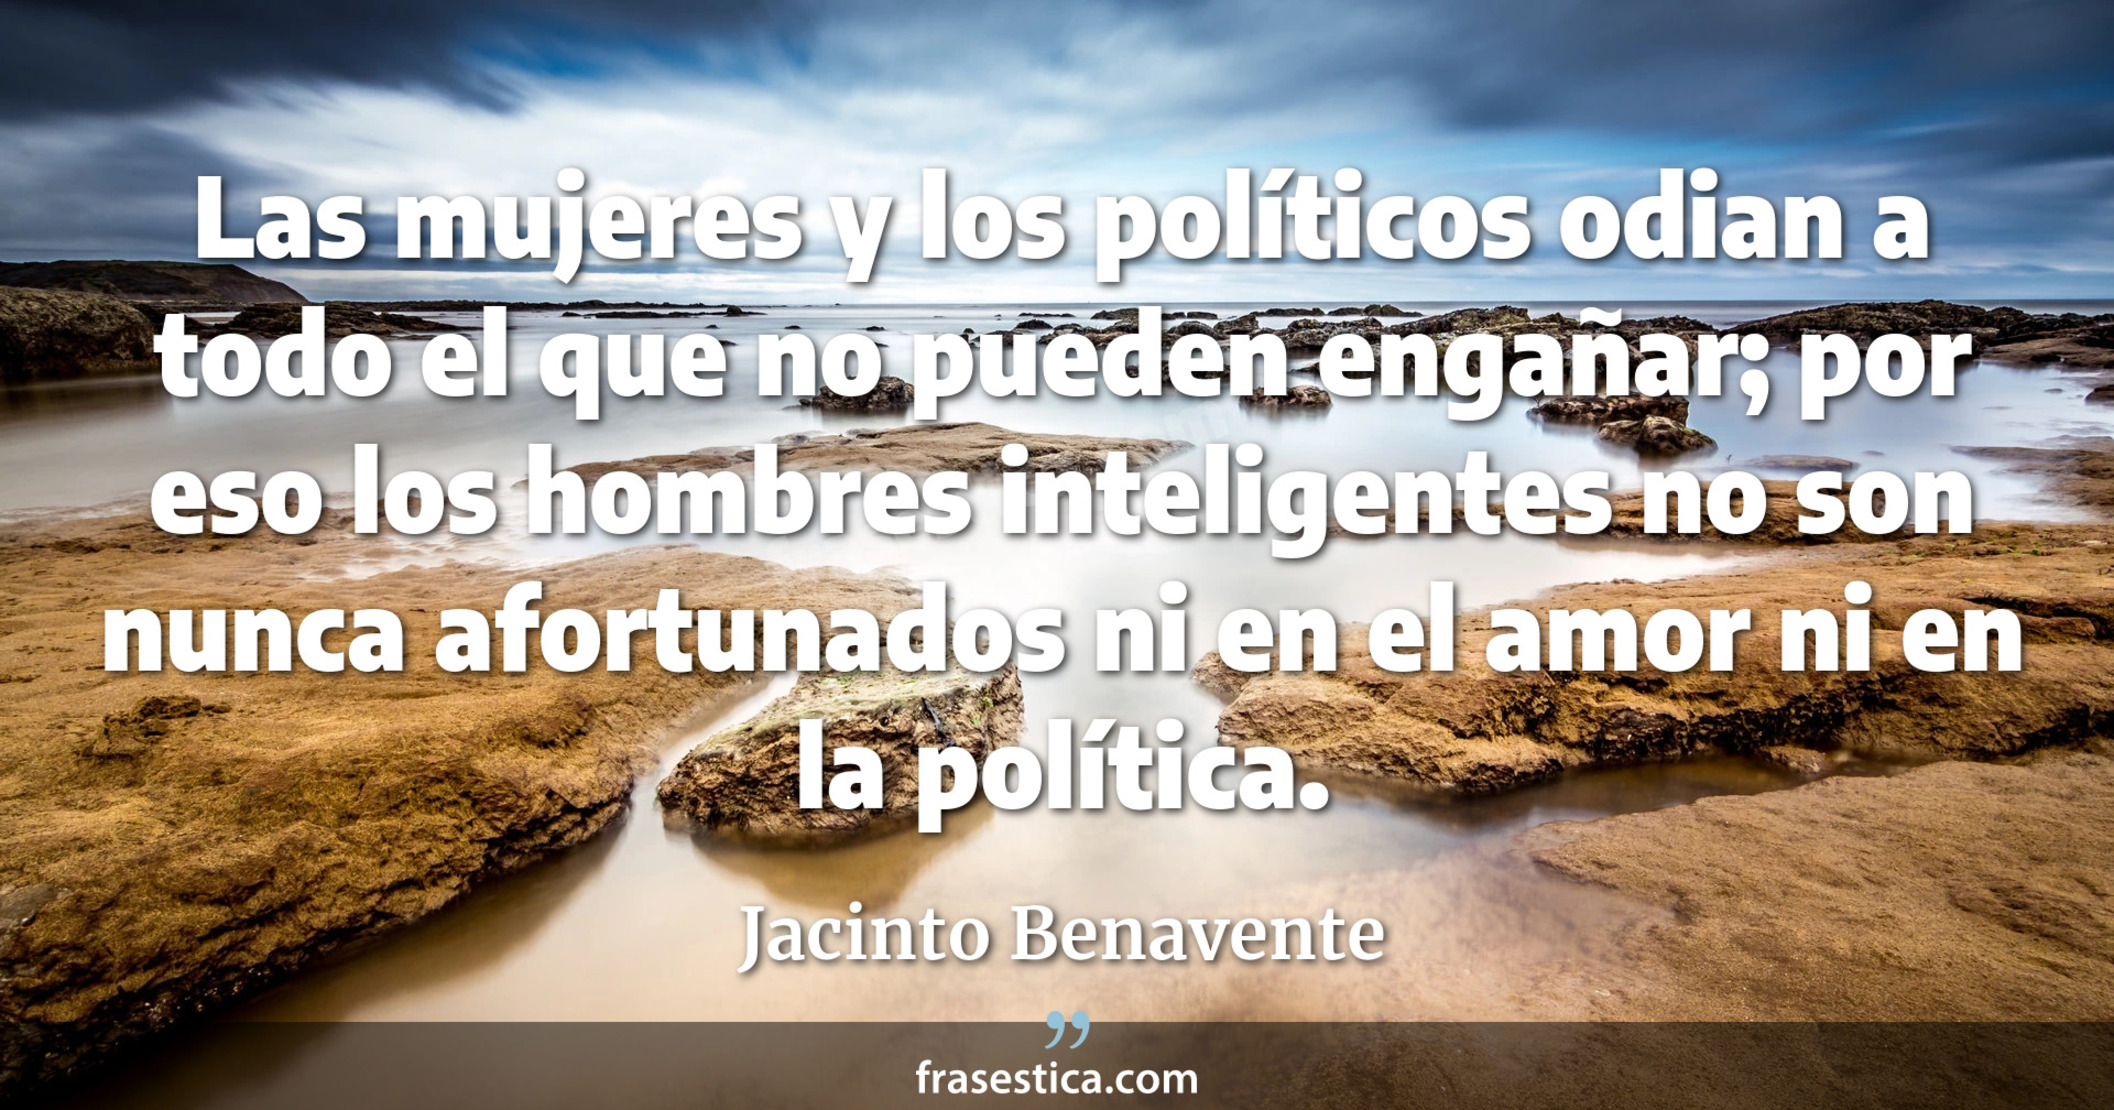 Las mujeres y los políticos odian a todo el que no pueden engañar; por eso los hombres inteligentes no son nunca afortunados ni en el amor ni en la política. - Jacinto Benavente